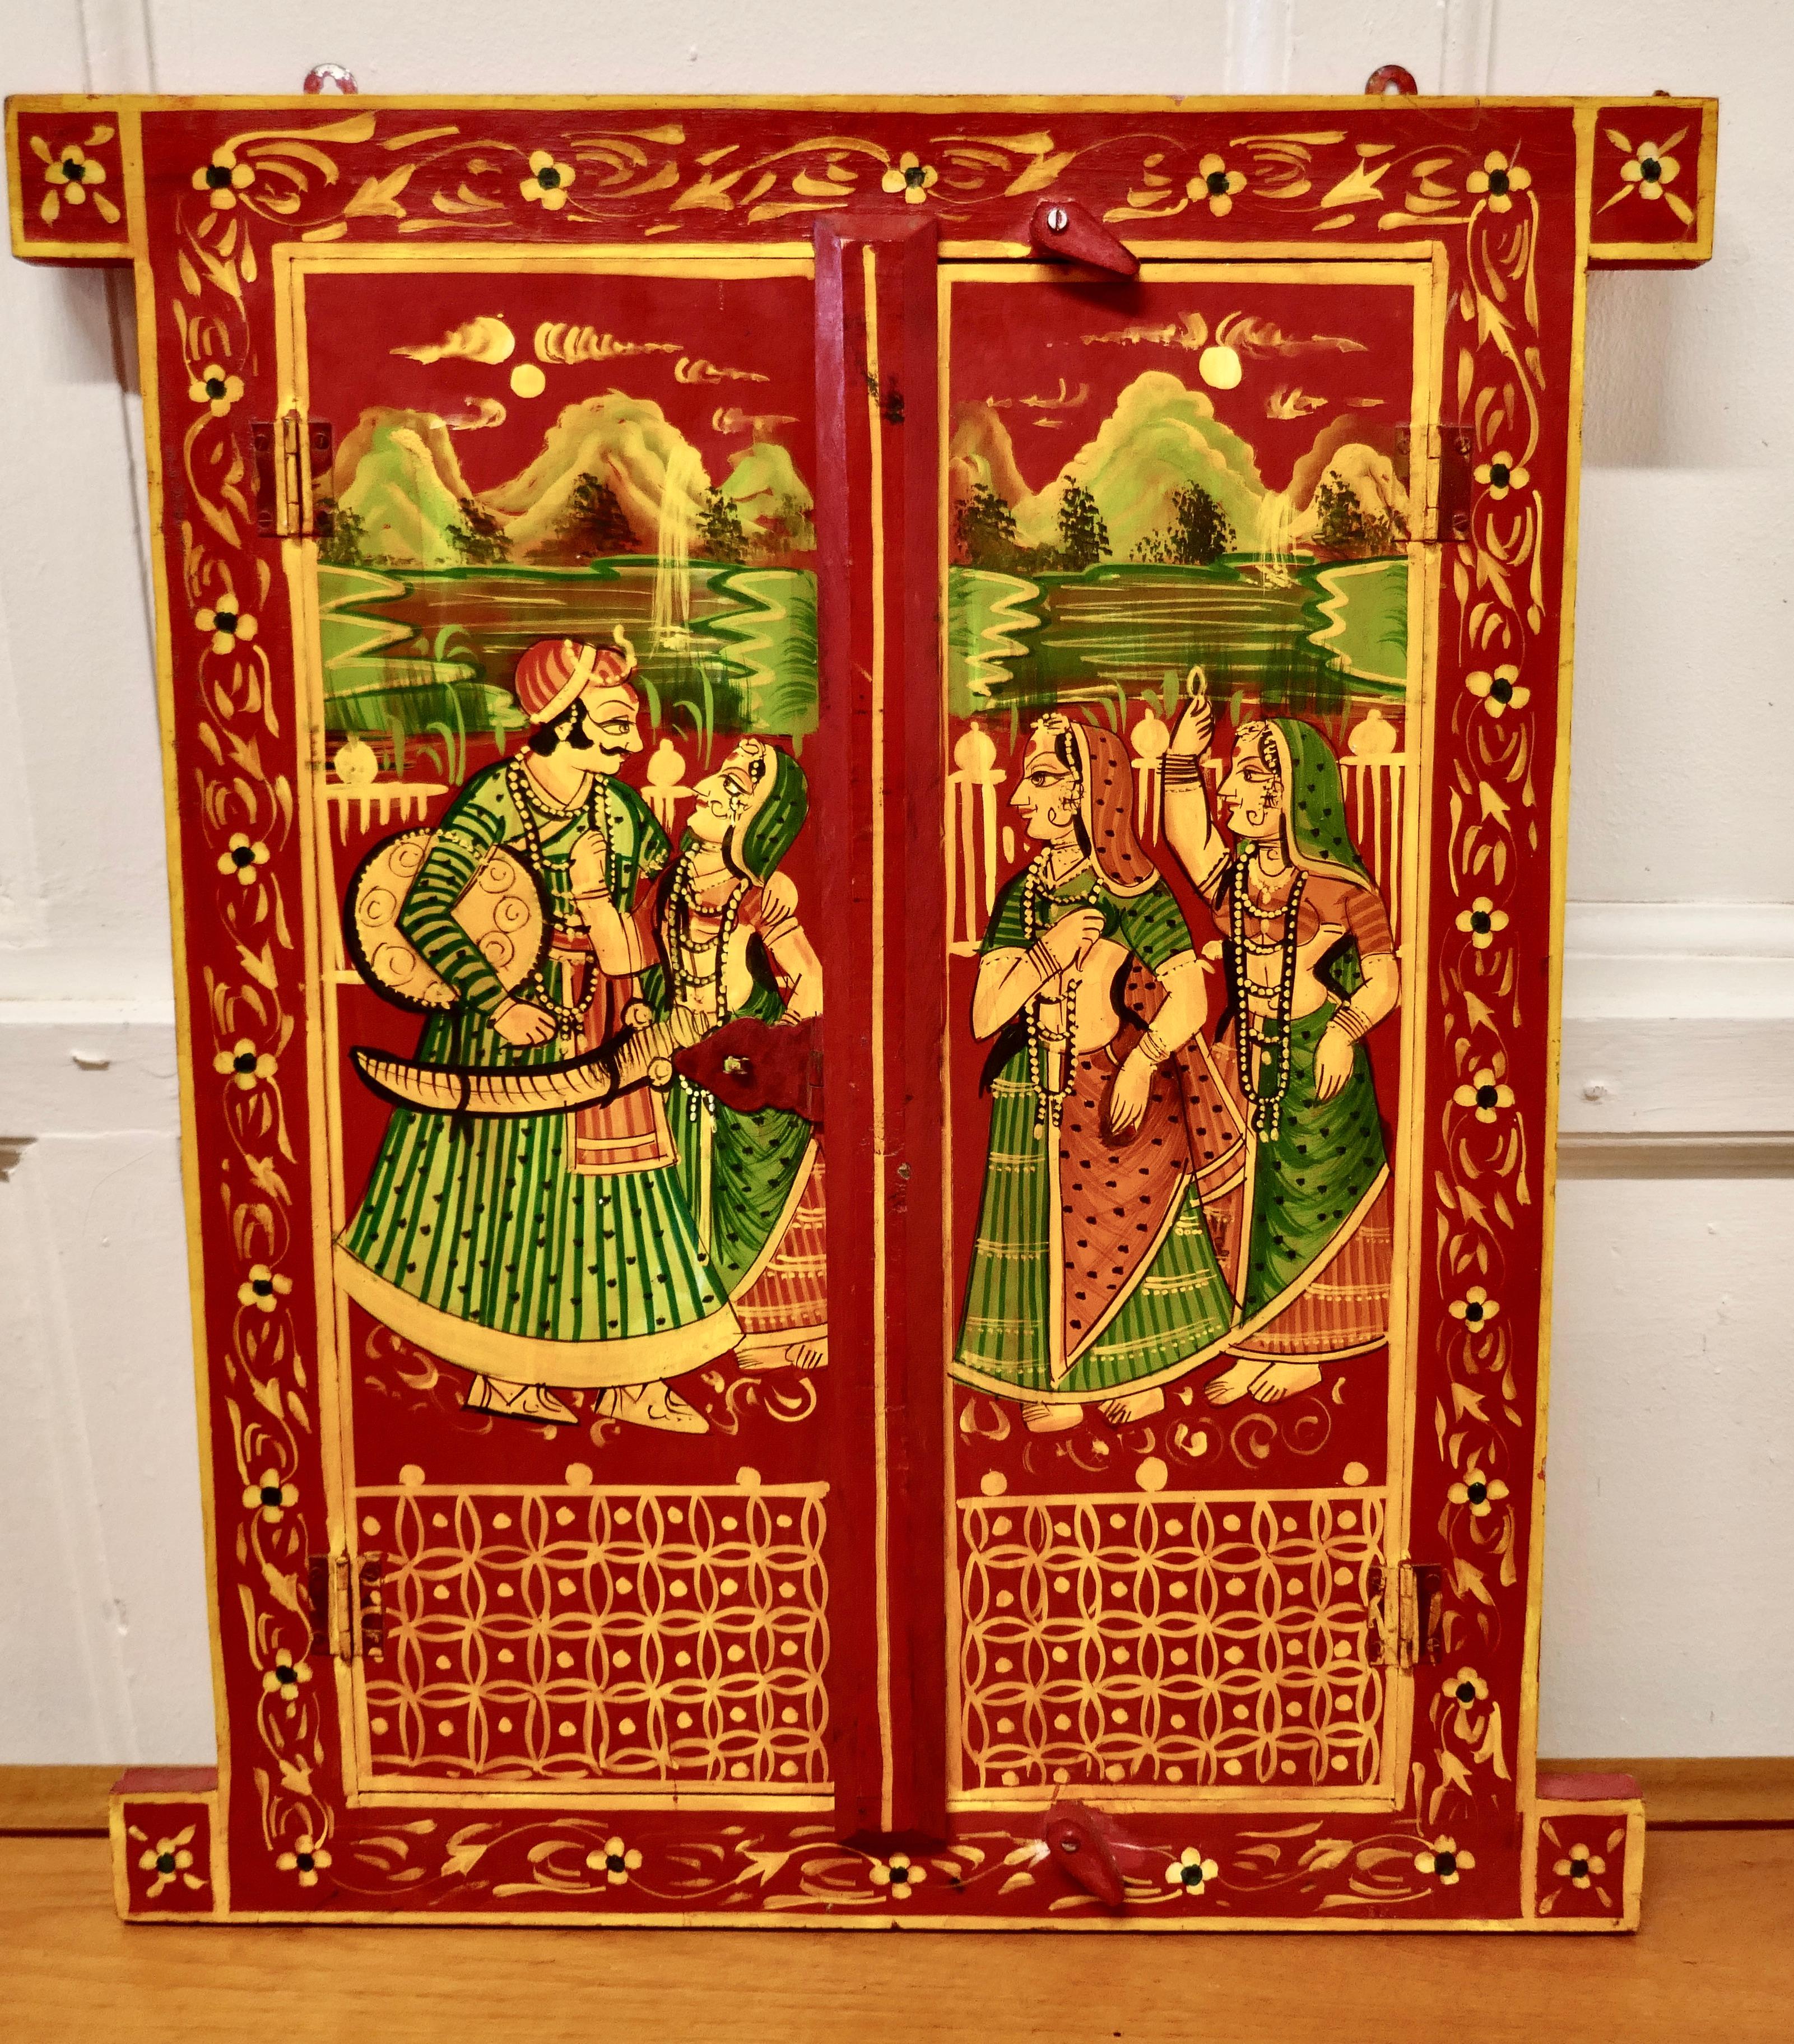 Portes indiennes miniatures, volets d'art populaire

Ces belles portes encadrées sont magnifiquement et brillamment peintes à la main avec des personnages indiens en tenue traditionnelle.
La paire de portes a ses charnières métalliques et ses